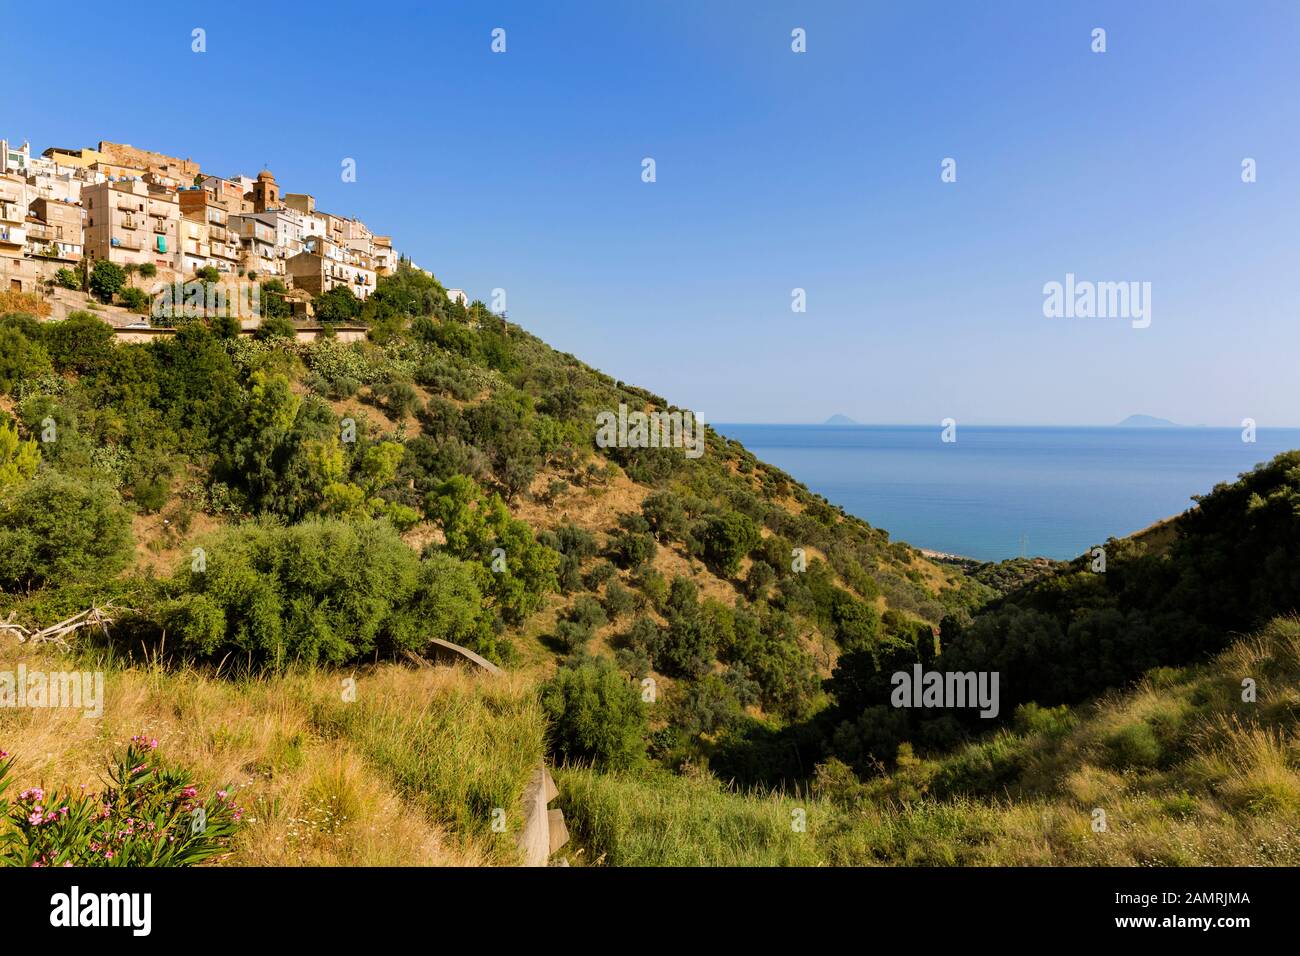 Vista del mar azul y las islas Eolias desde el pueblo medieval de Caronia, Messina, Sicilia, Italia. Foto de stock